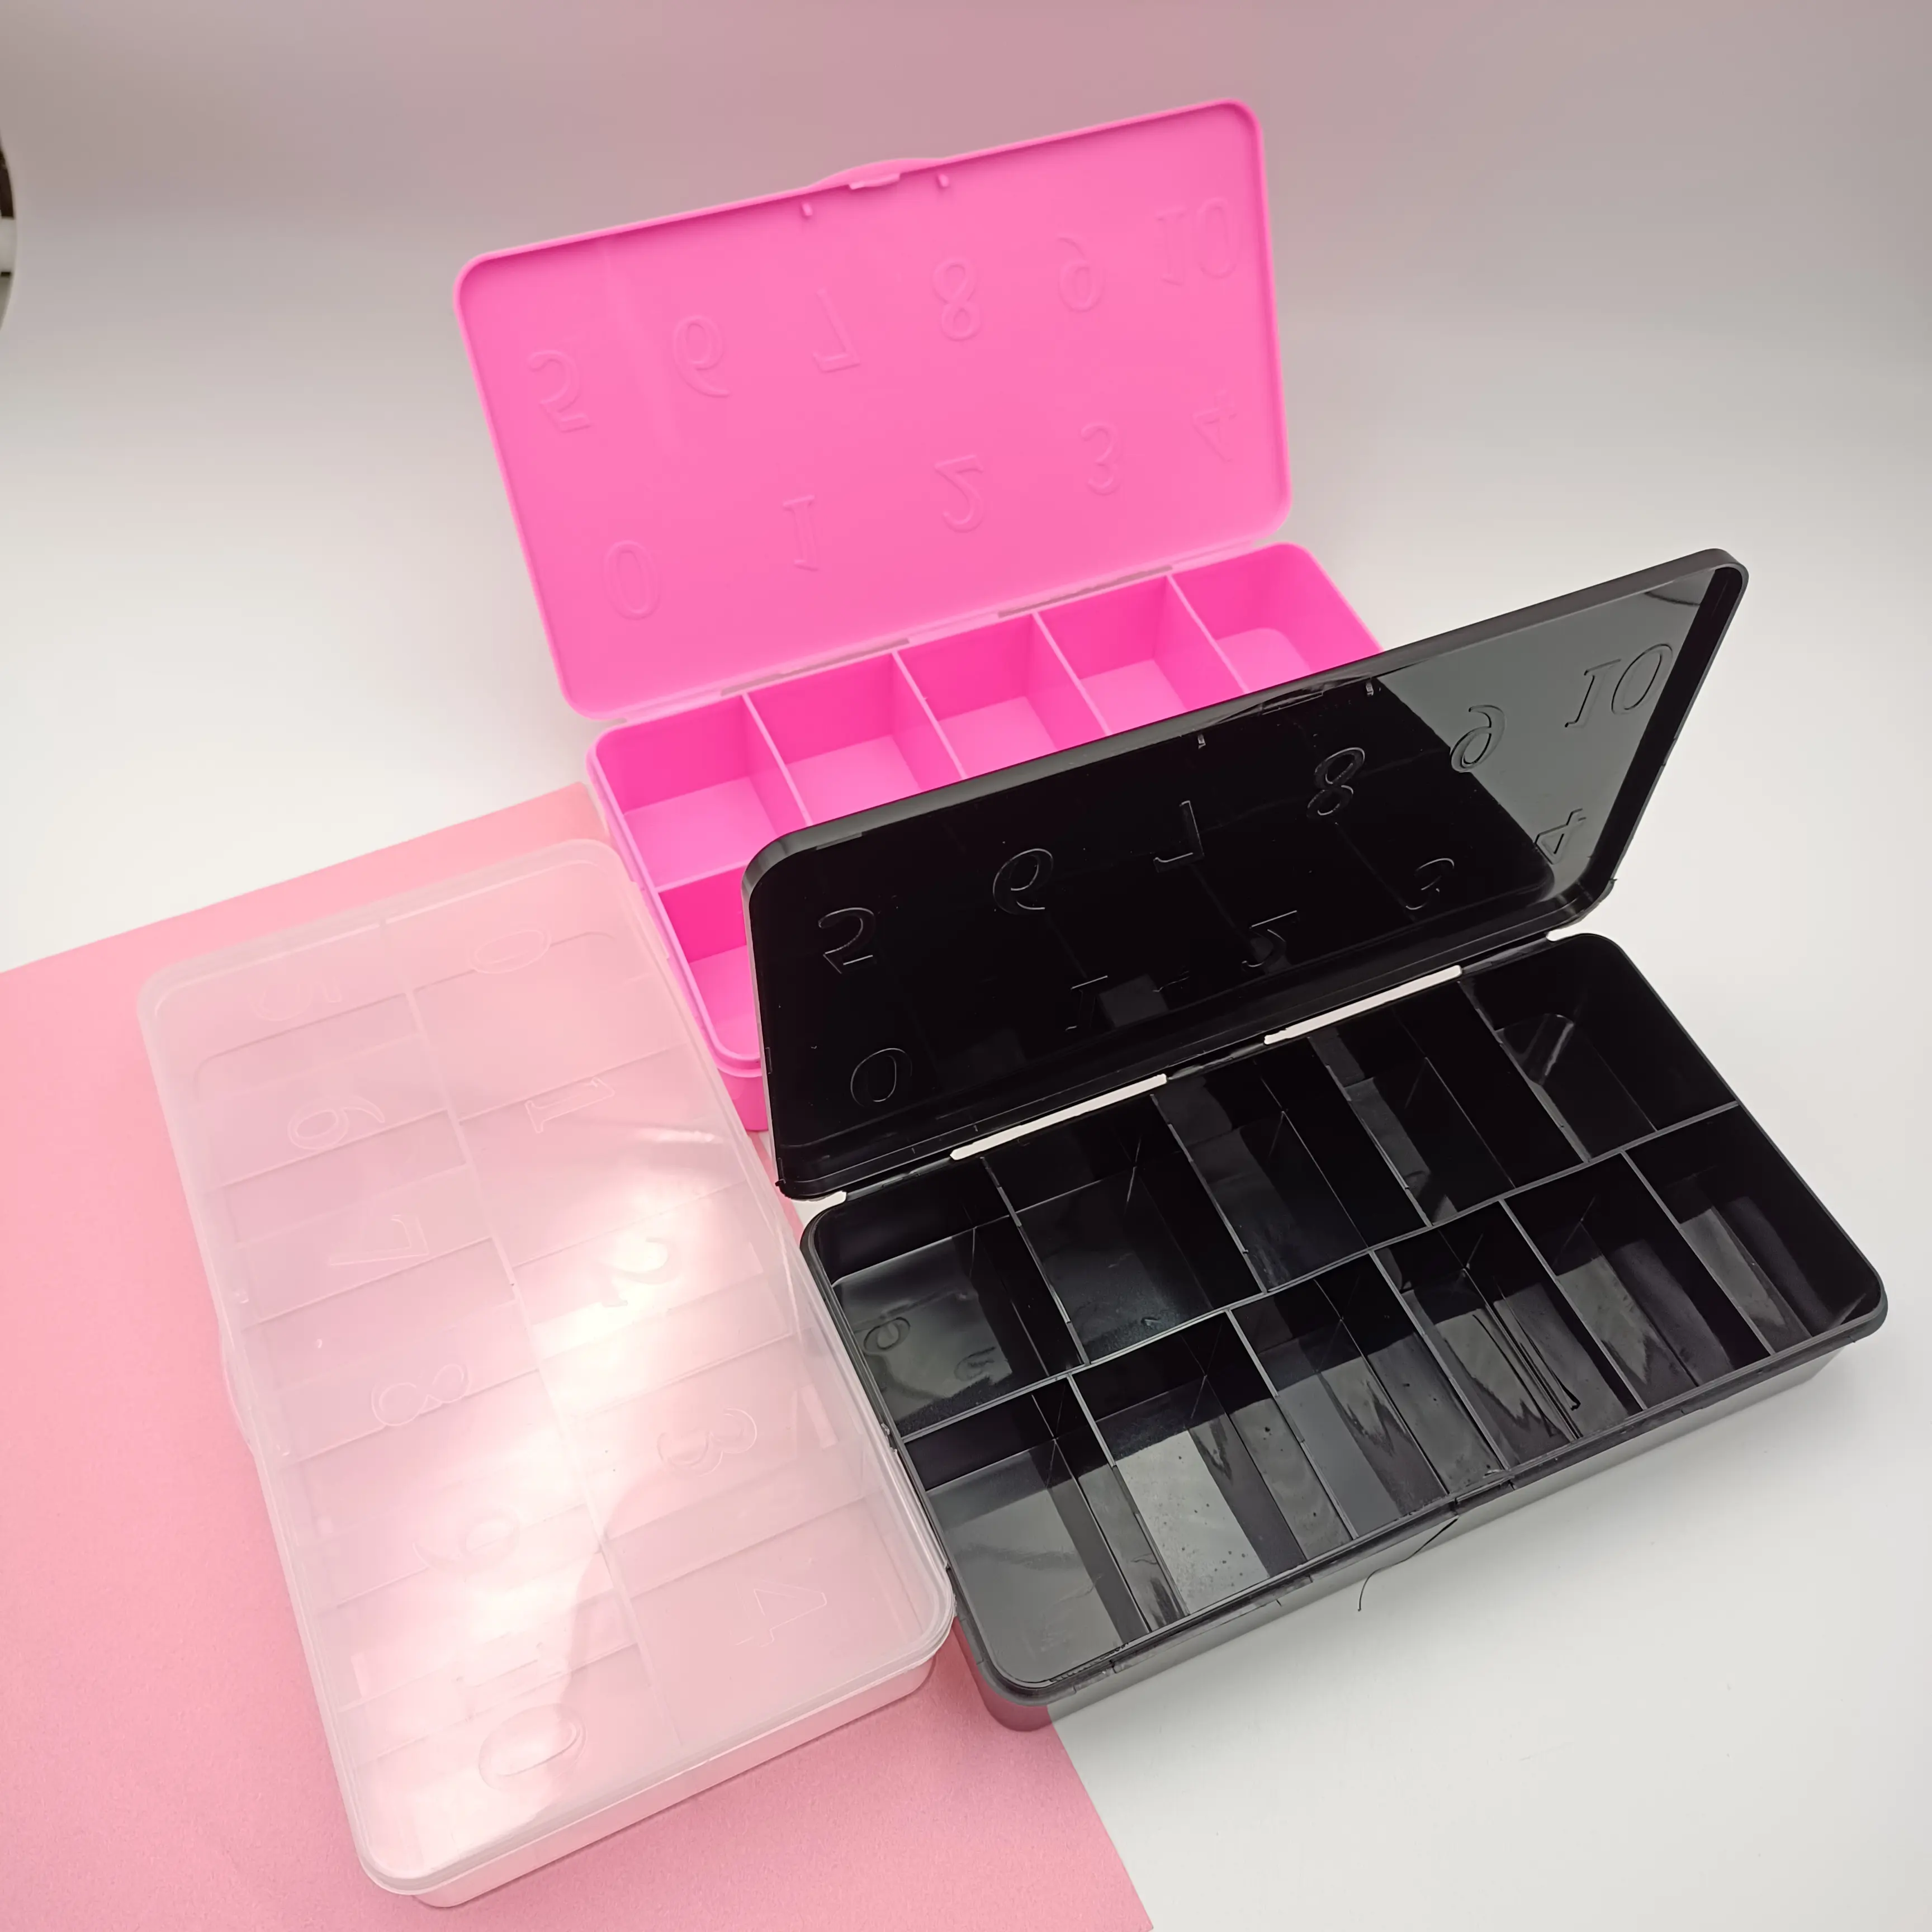 Label pribadi nomor kustom plastik bening transparan hitam merah muda kosong kotak ujung kuku